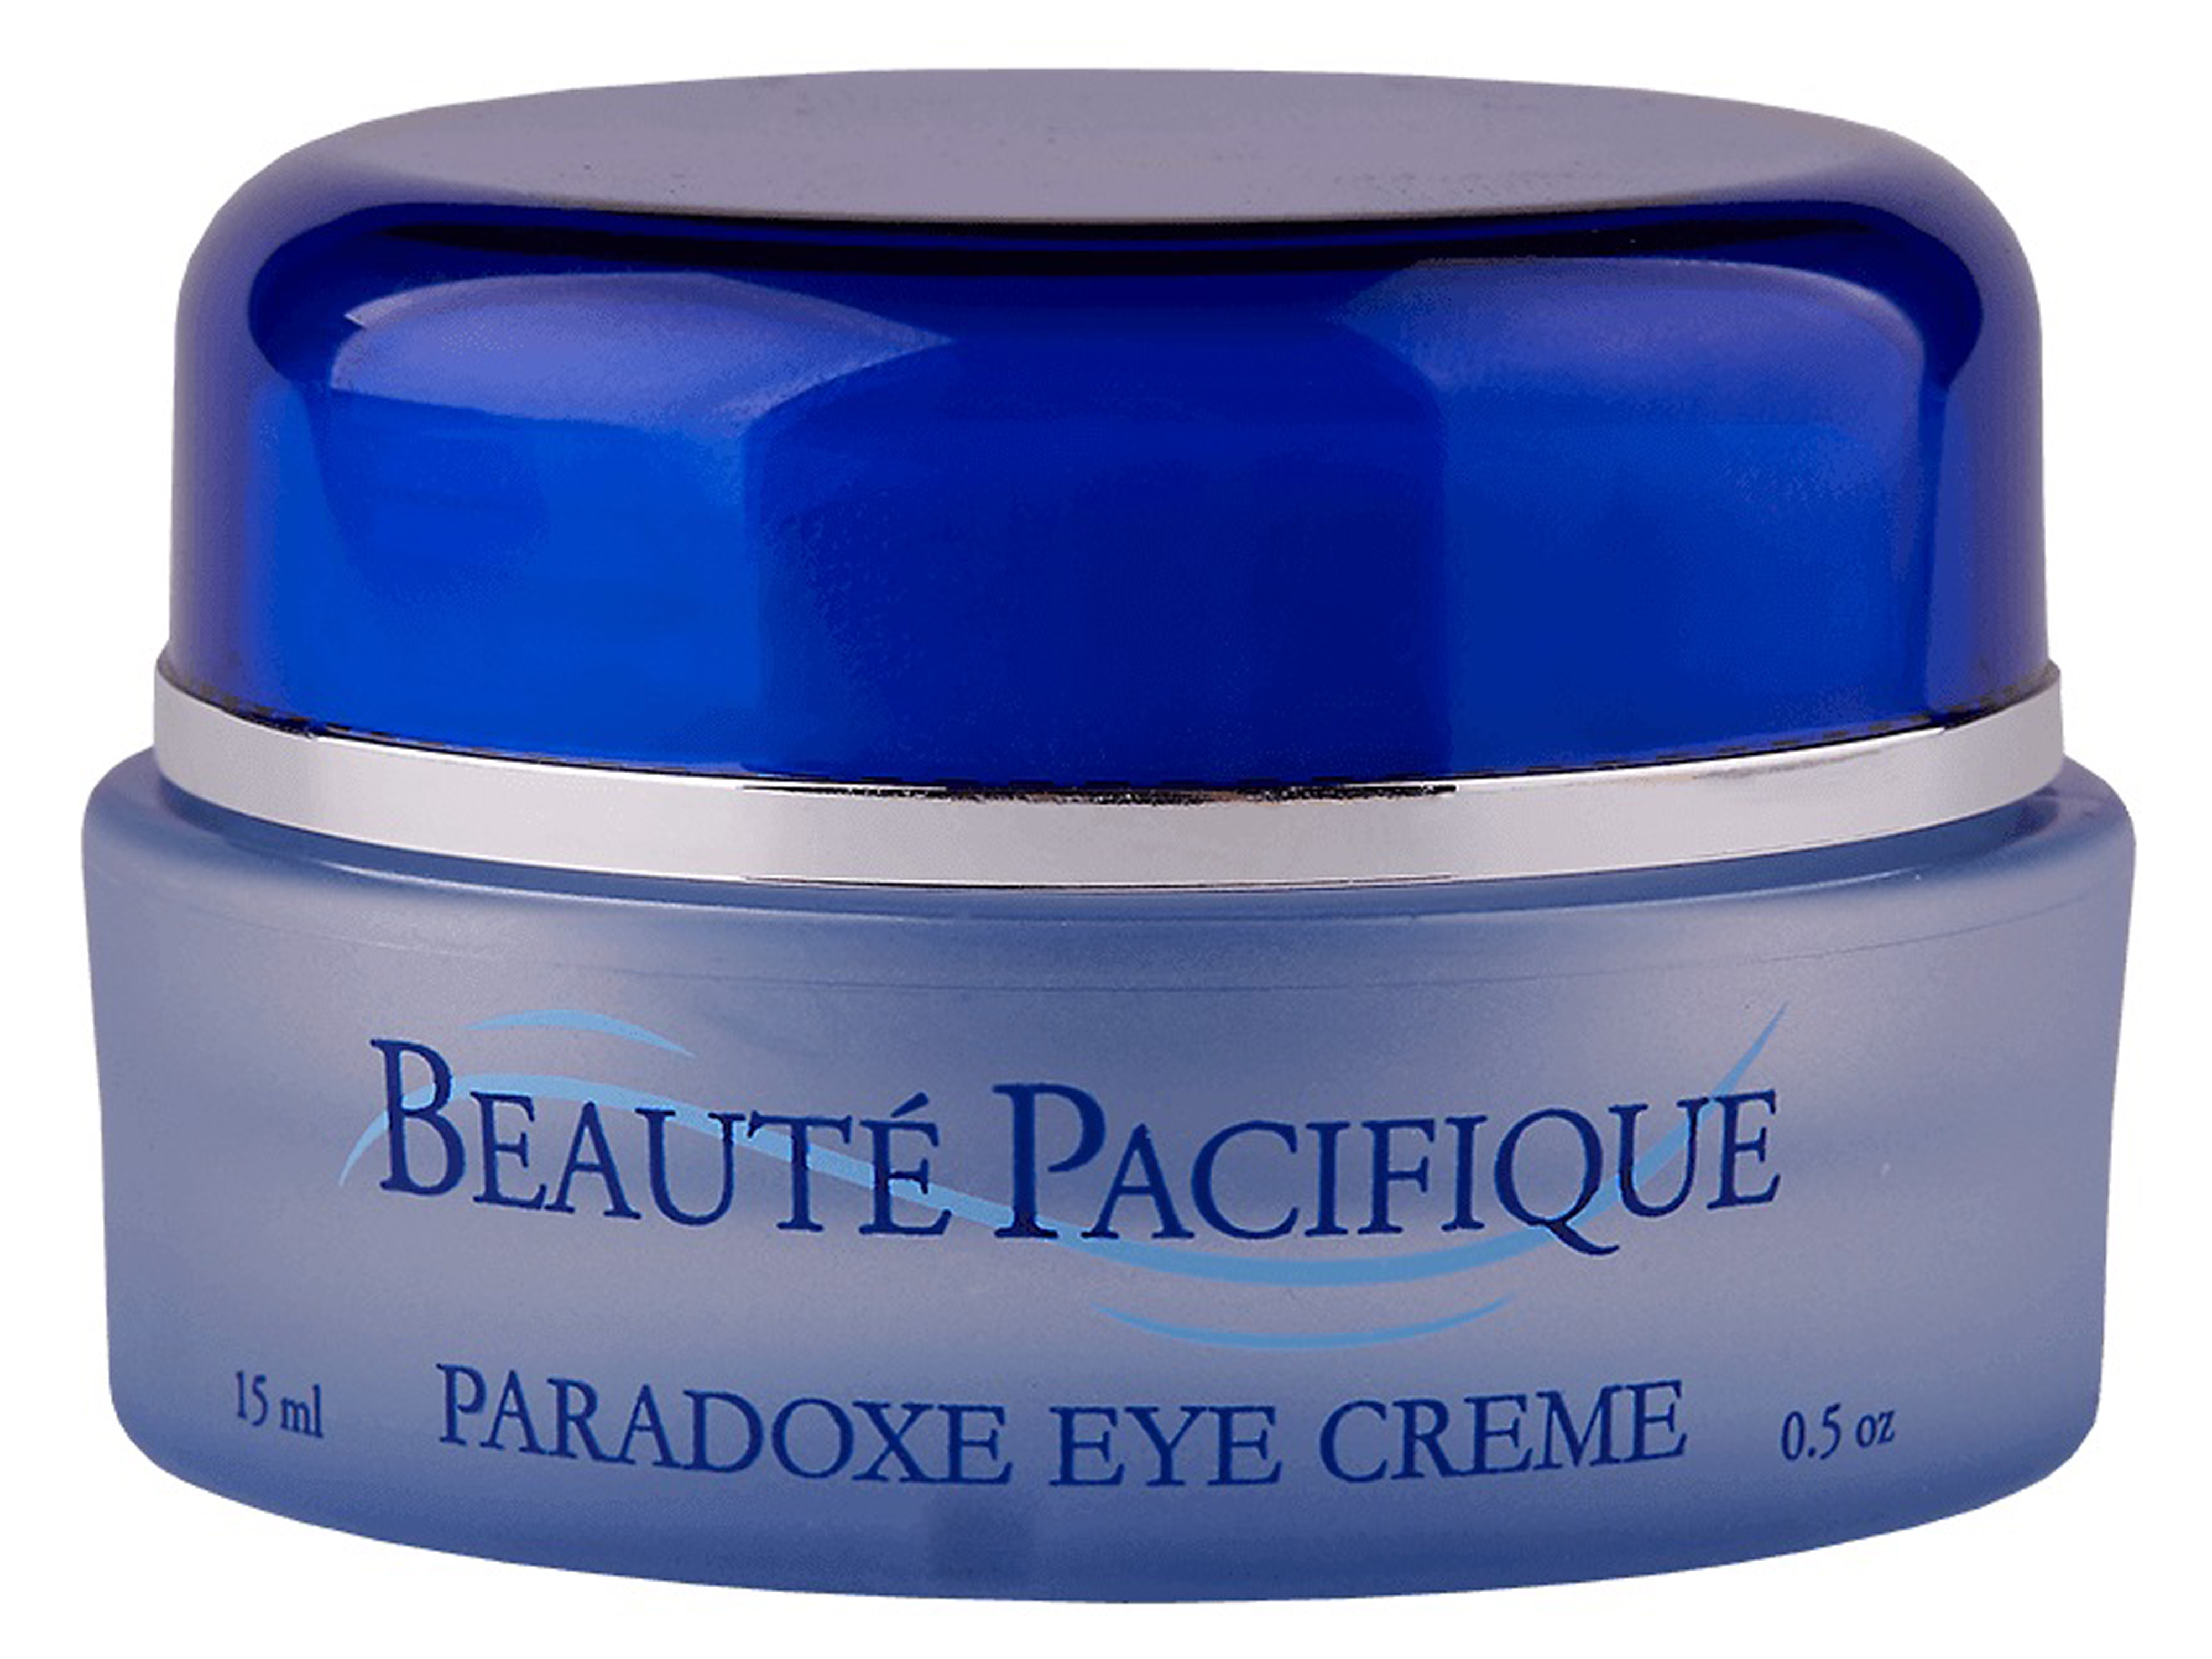 Beauté Pacifique Paradoxe Eye Creme, 15 ml